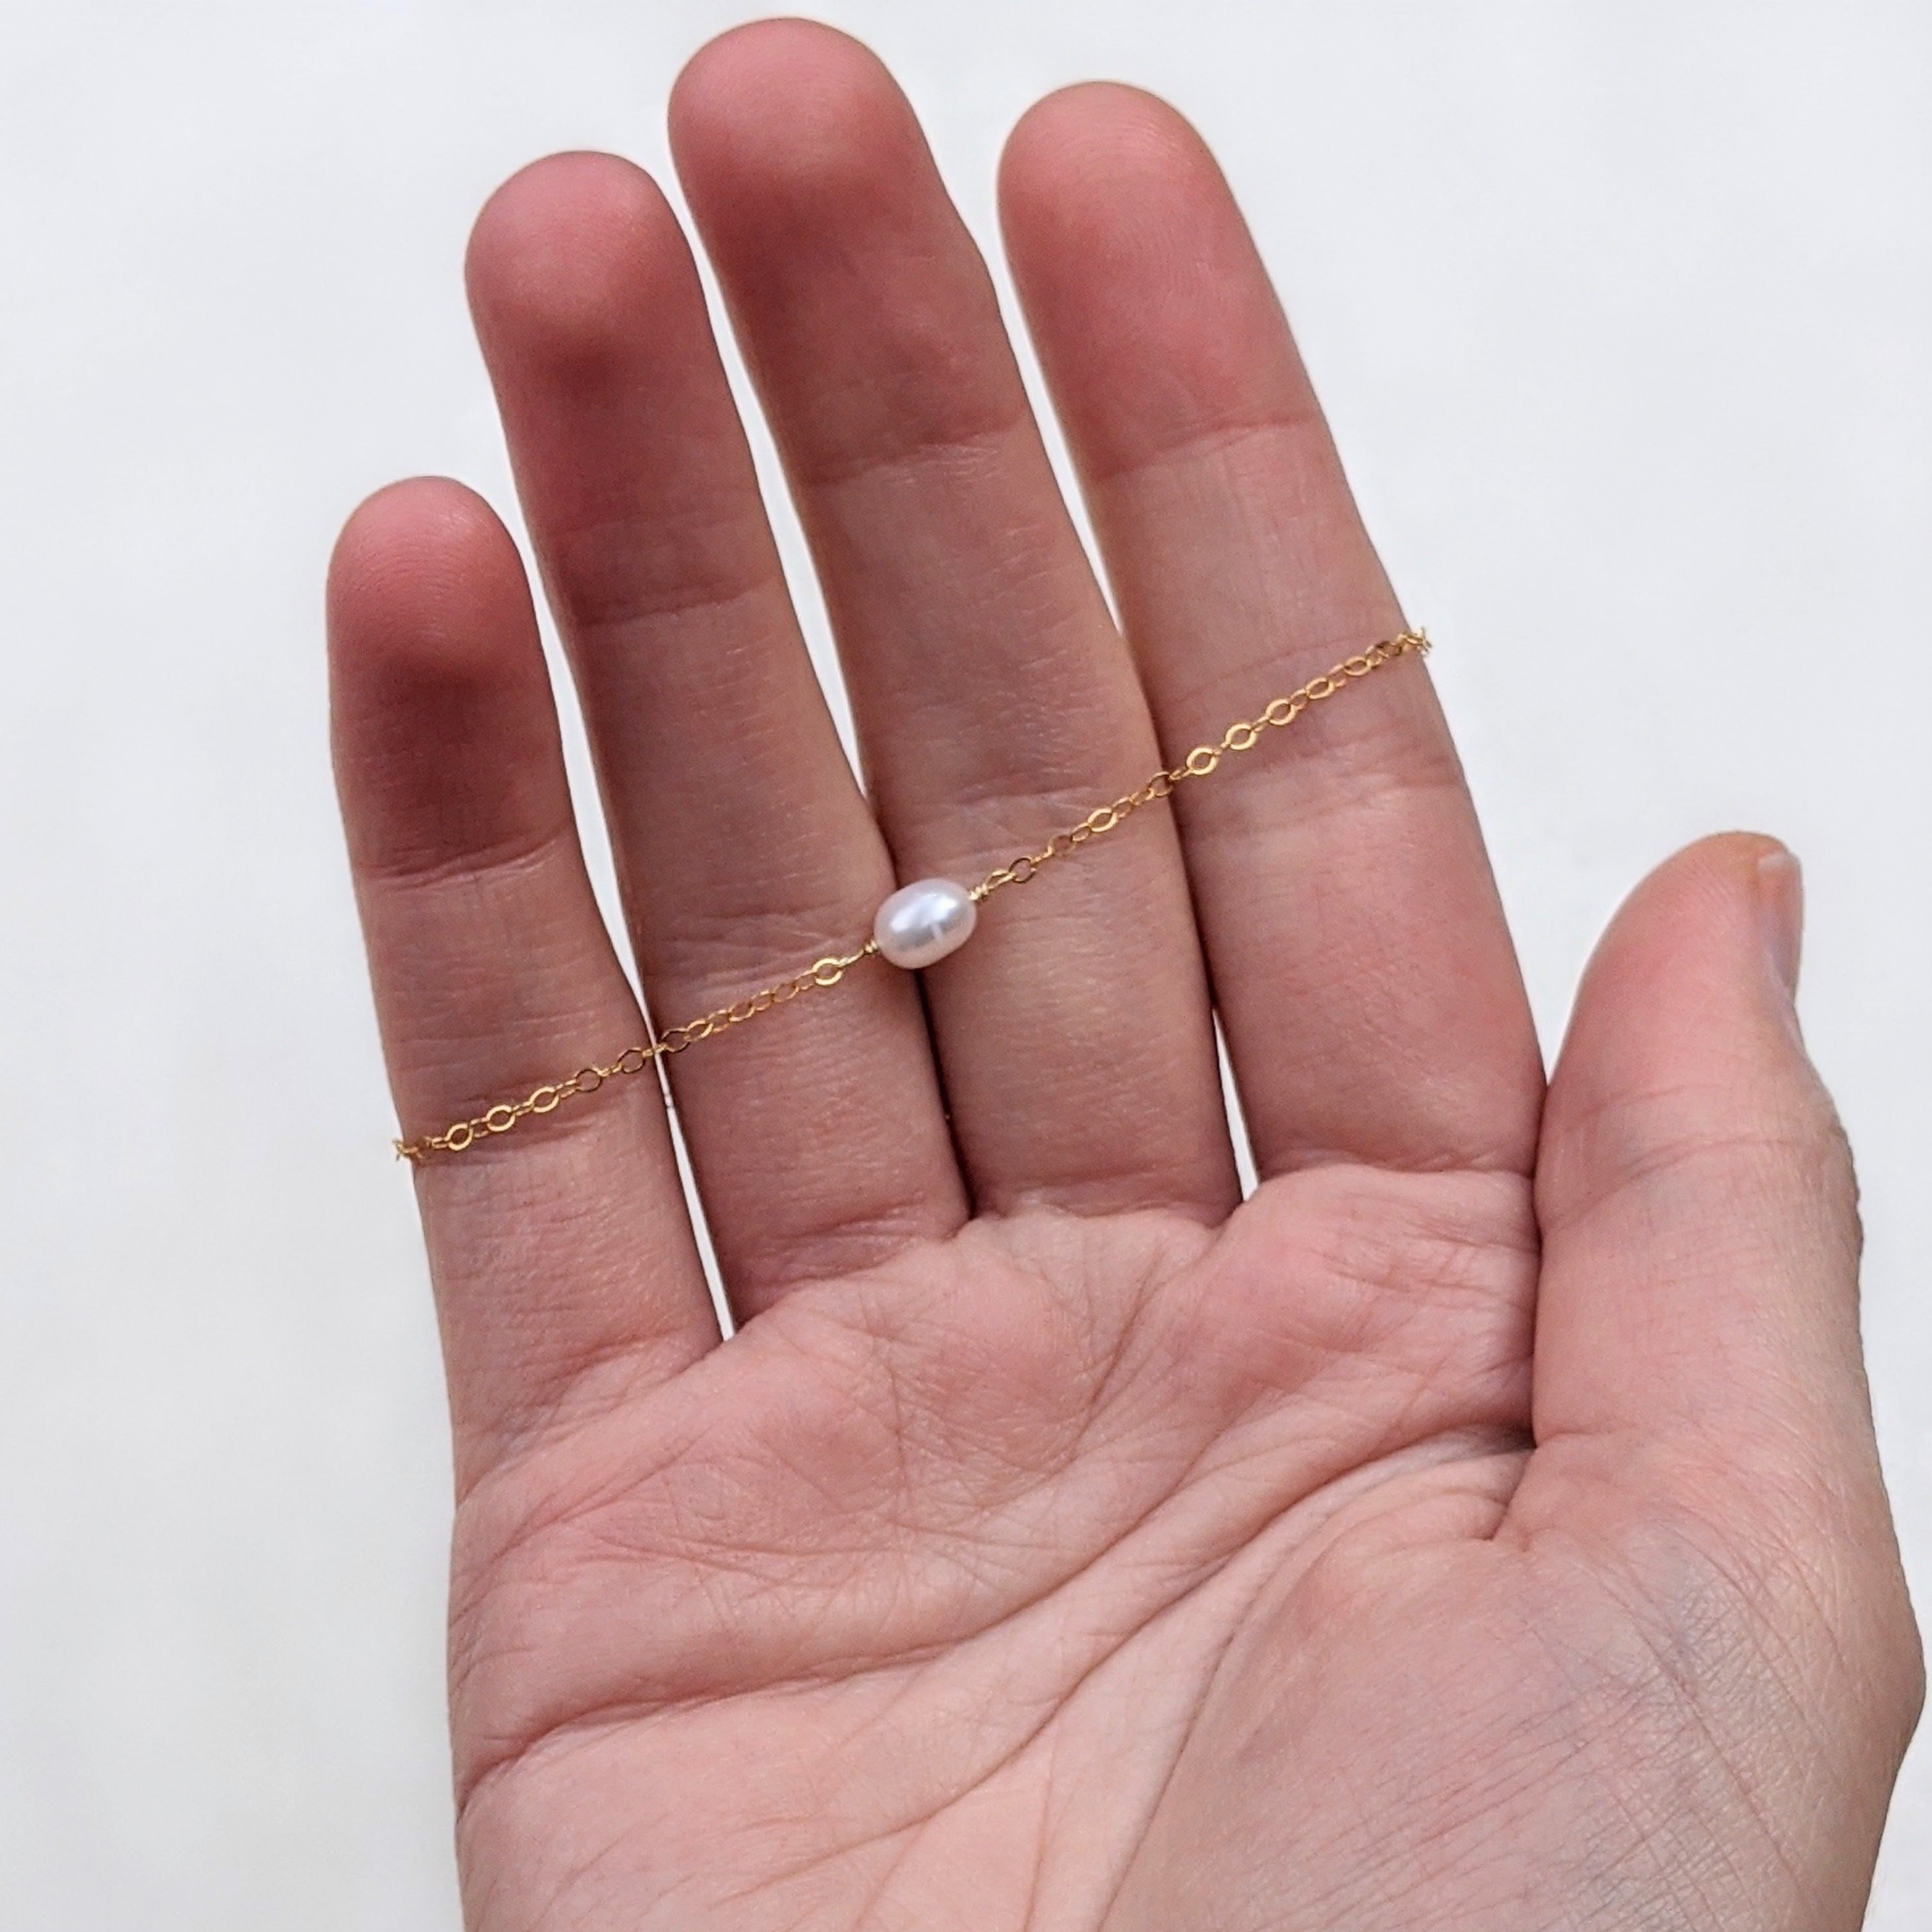 Single pearl bracelet in a hand